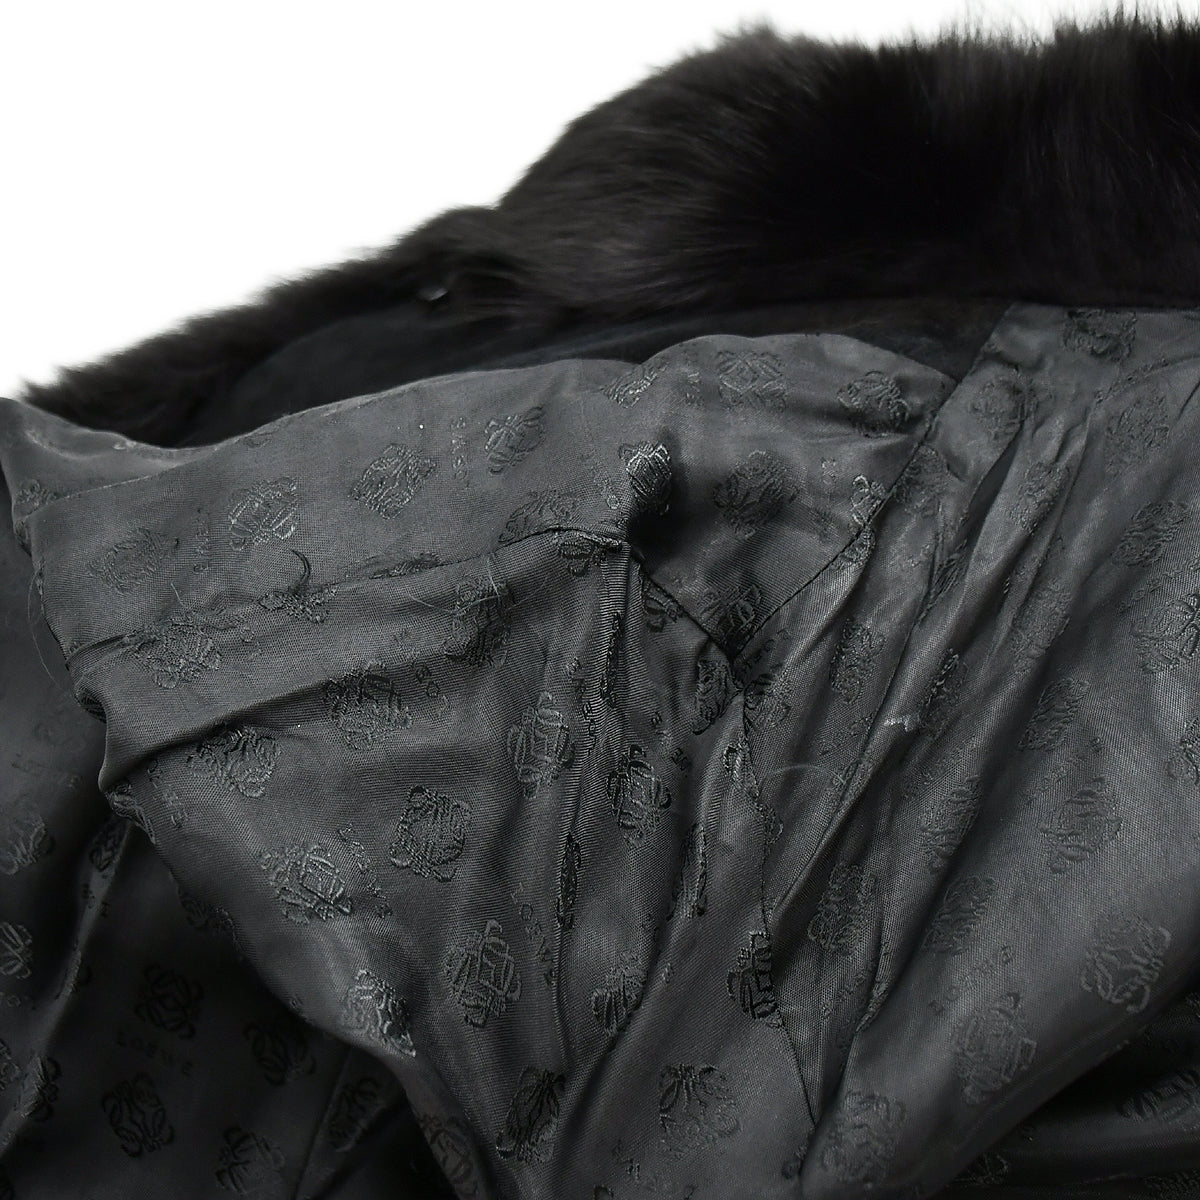 Loewe Fur Jacket Black 